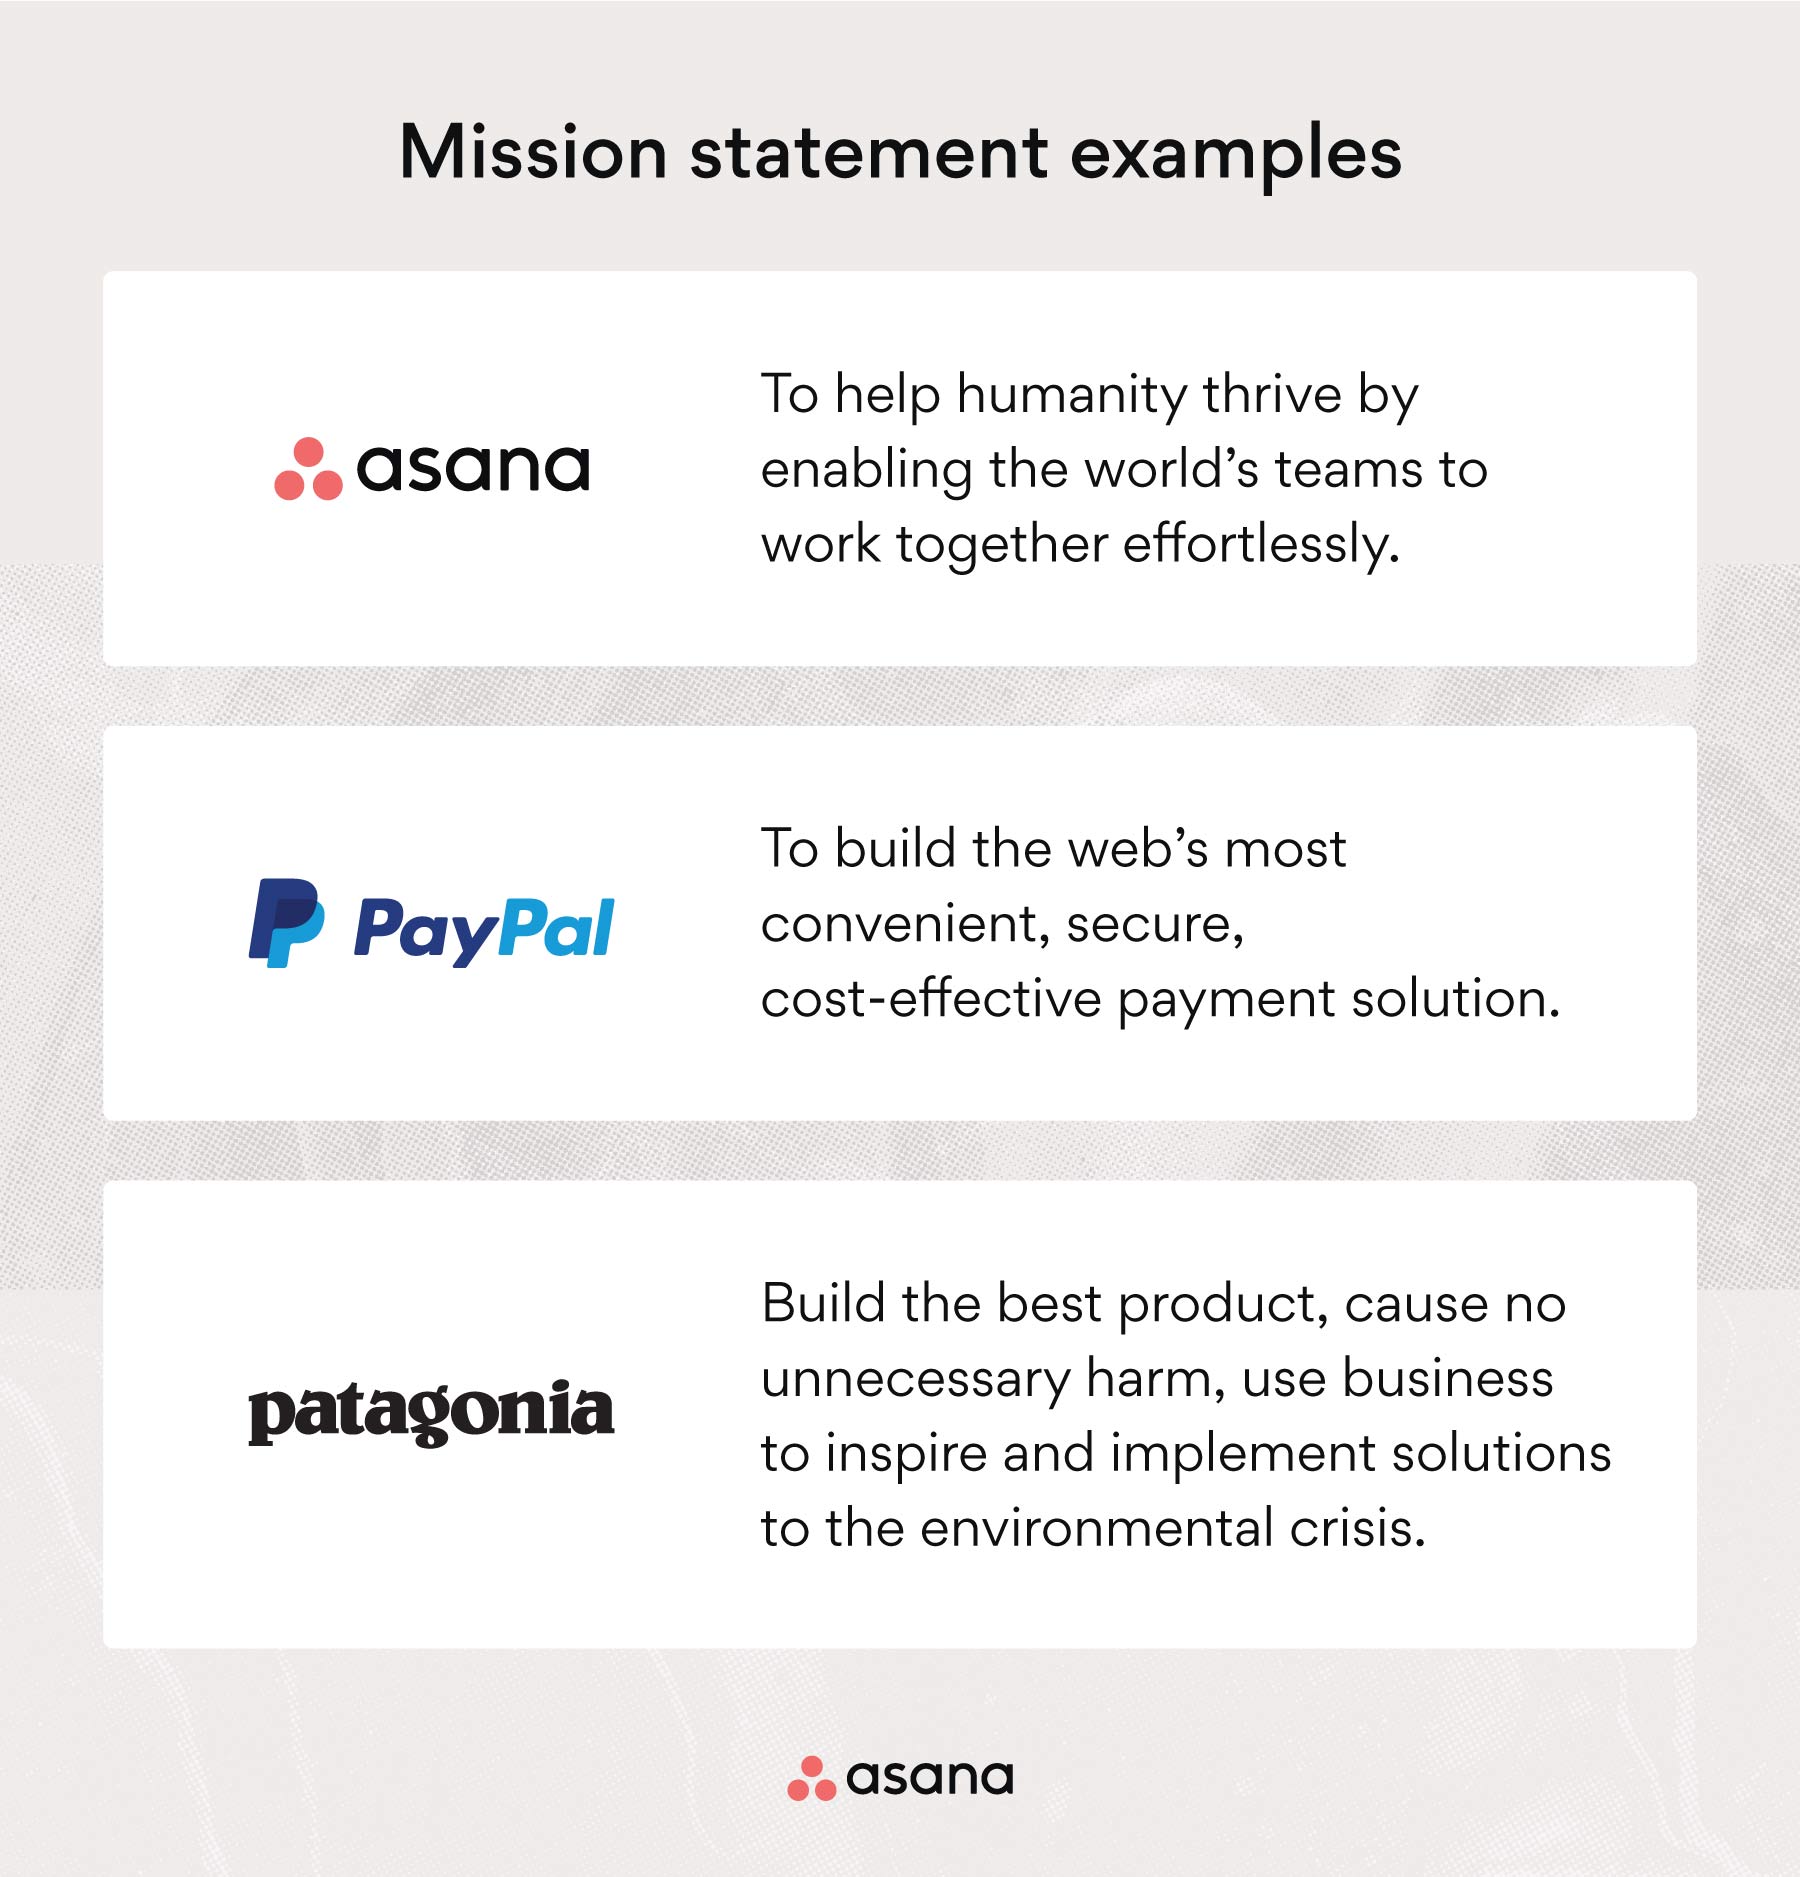 [Illustration intégrée] Exemples d’énoncés de mission : Asana, PayPal, Patagonia (exemple)